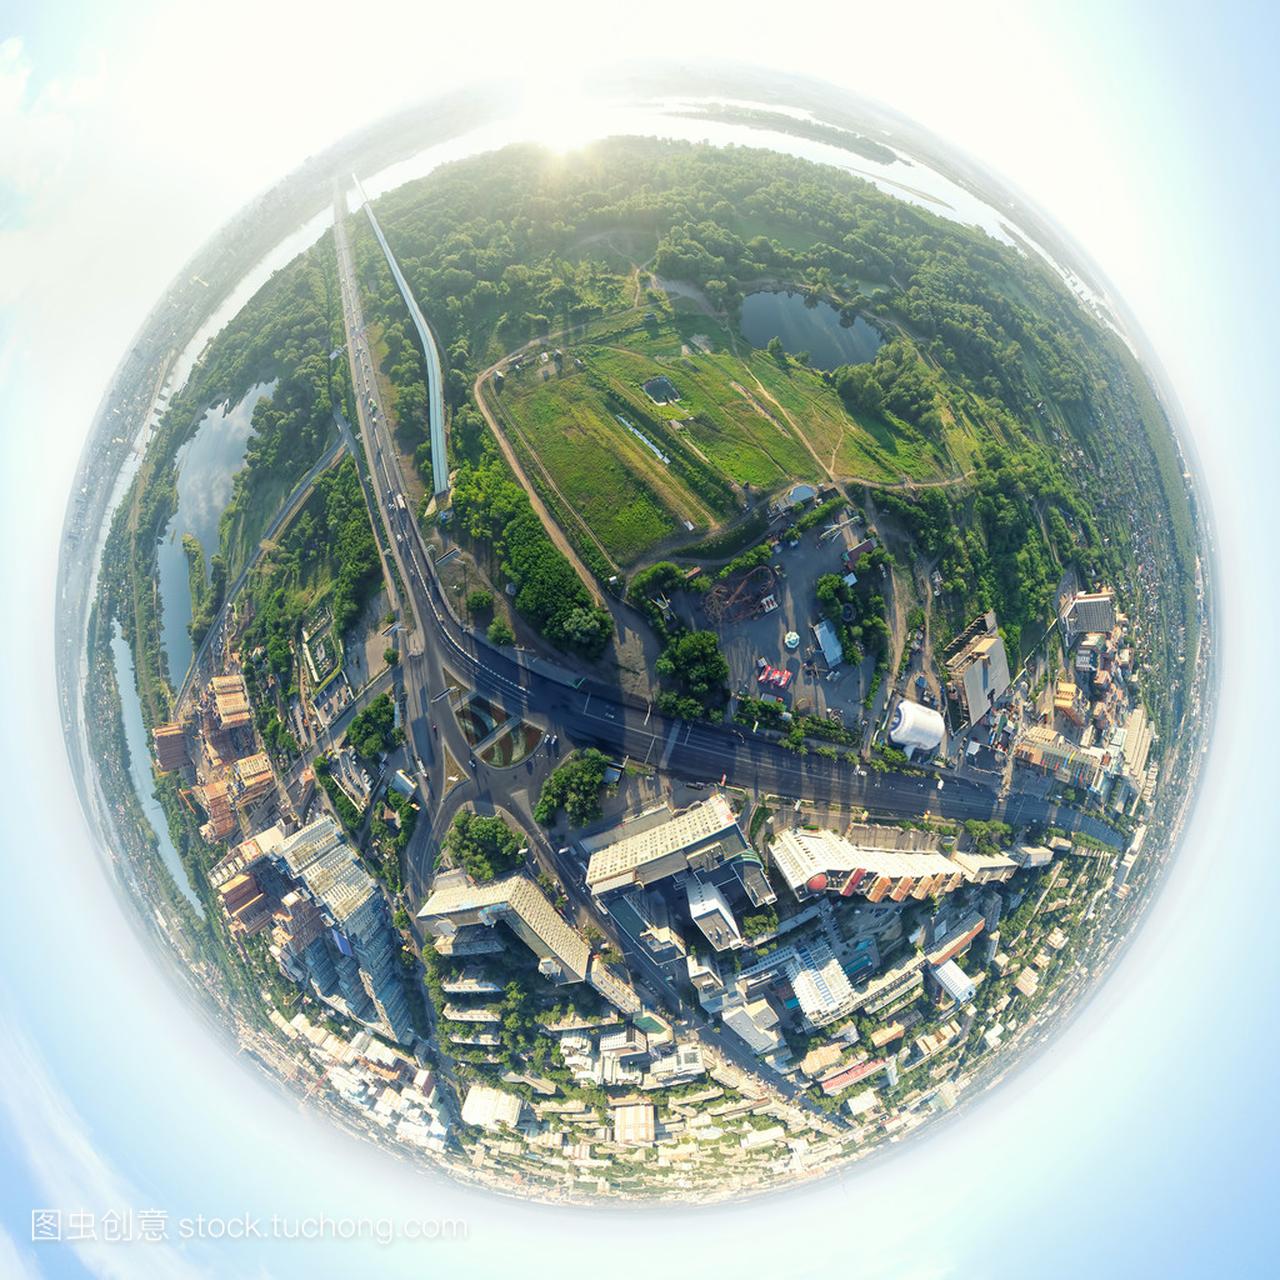 空中城市景观-小星球模式